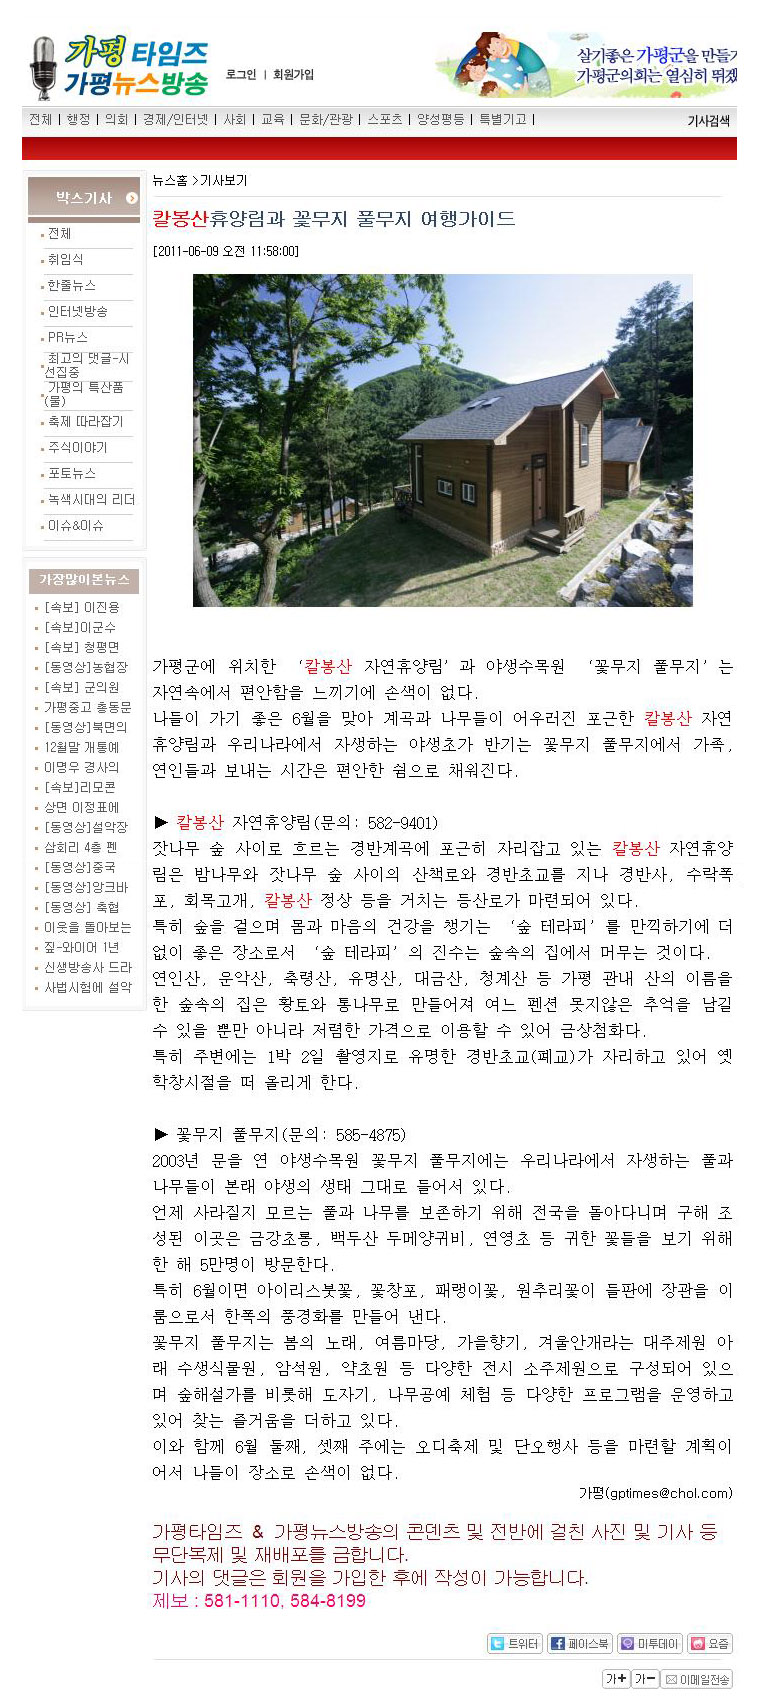 칼봉산휴양림과 꽃무지 풀무지 여행가이드(가평타임즈).jpg